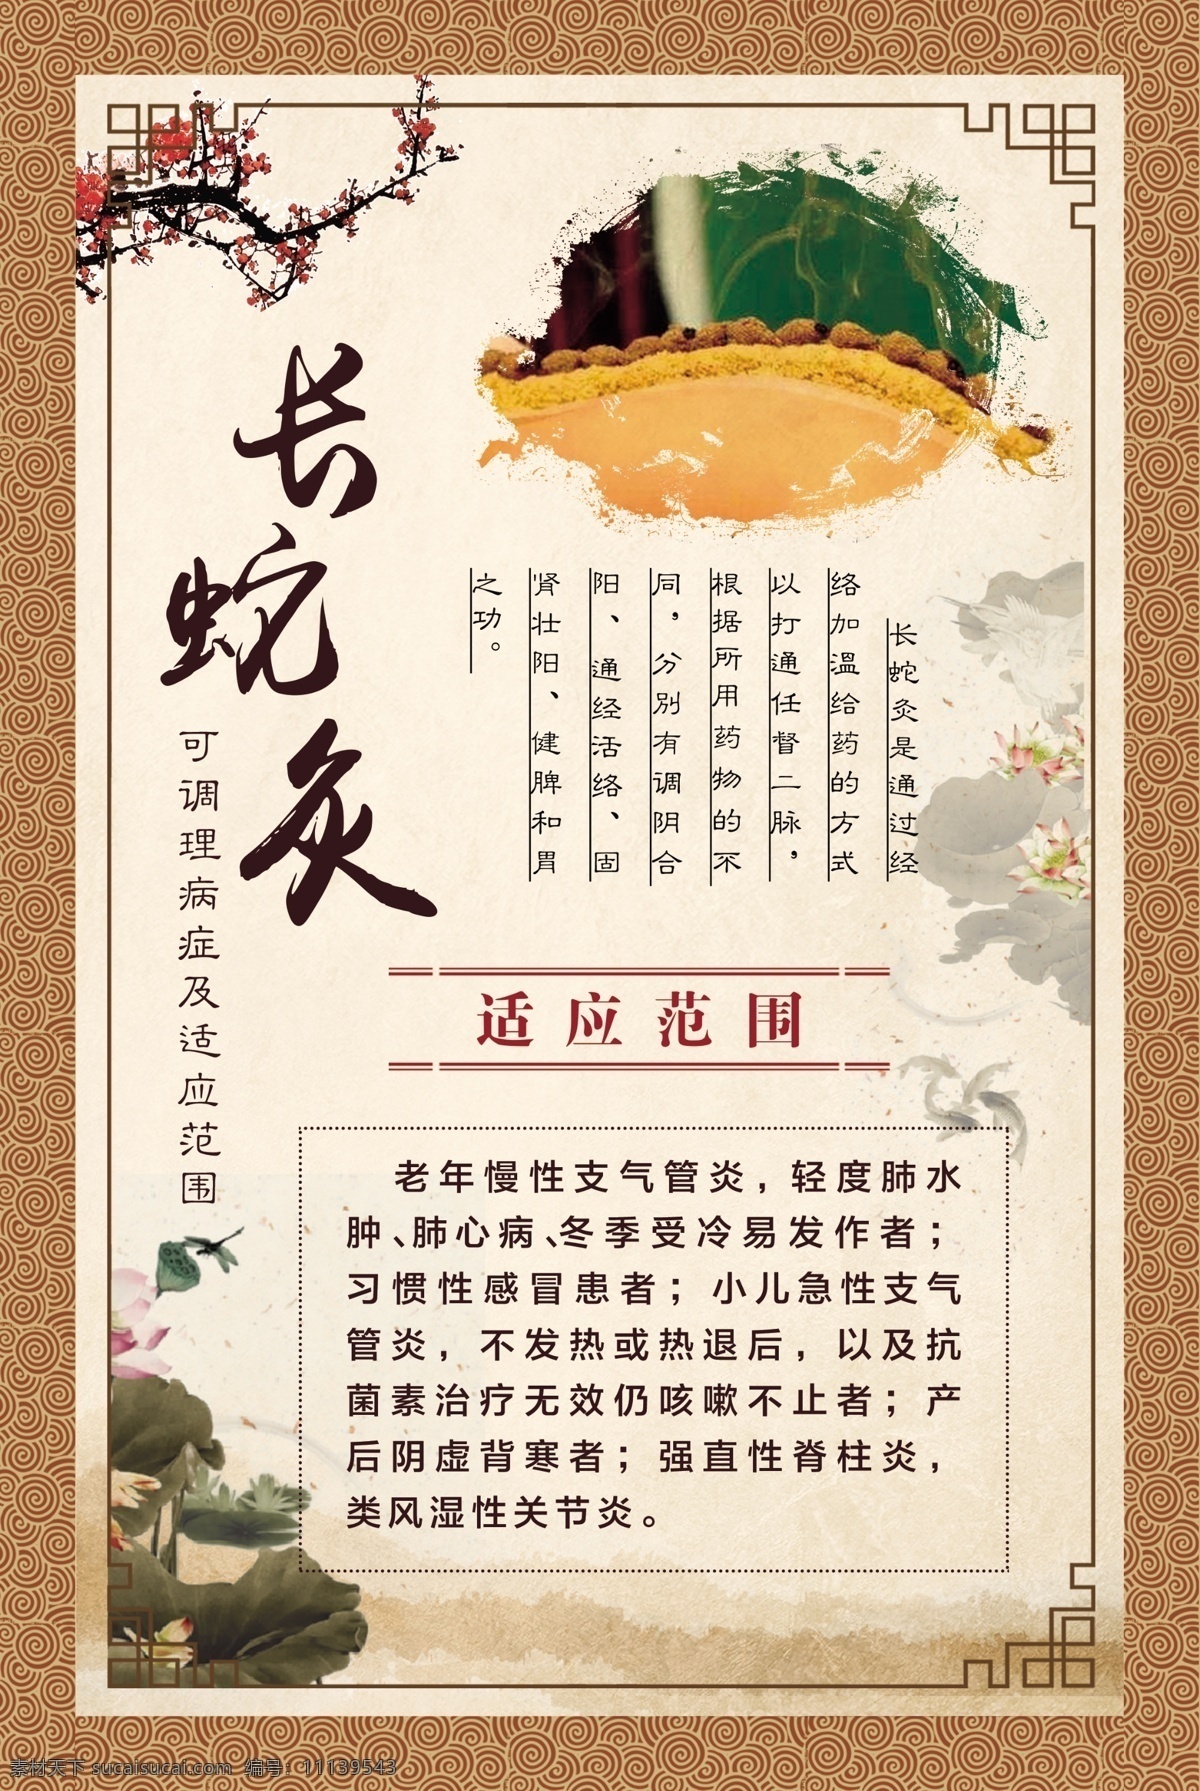 艾灸 长蛇灸 中国风 养生 养生灸 健康灸 psd分层 psd素材 文化艺术 传统文化